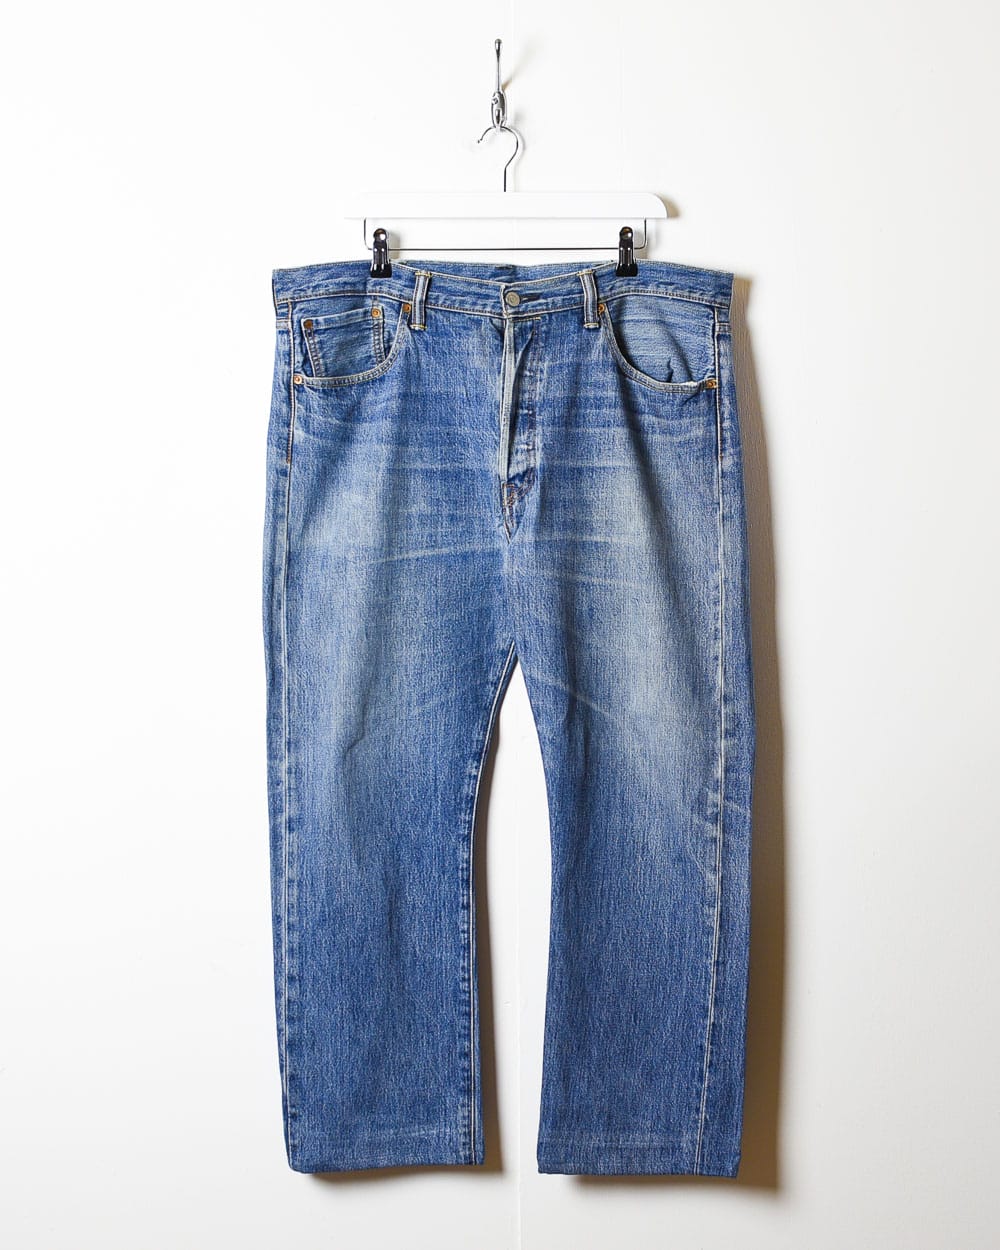 Blue Levi's 501 Jeans - W40 L29